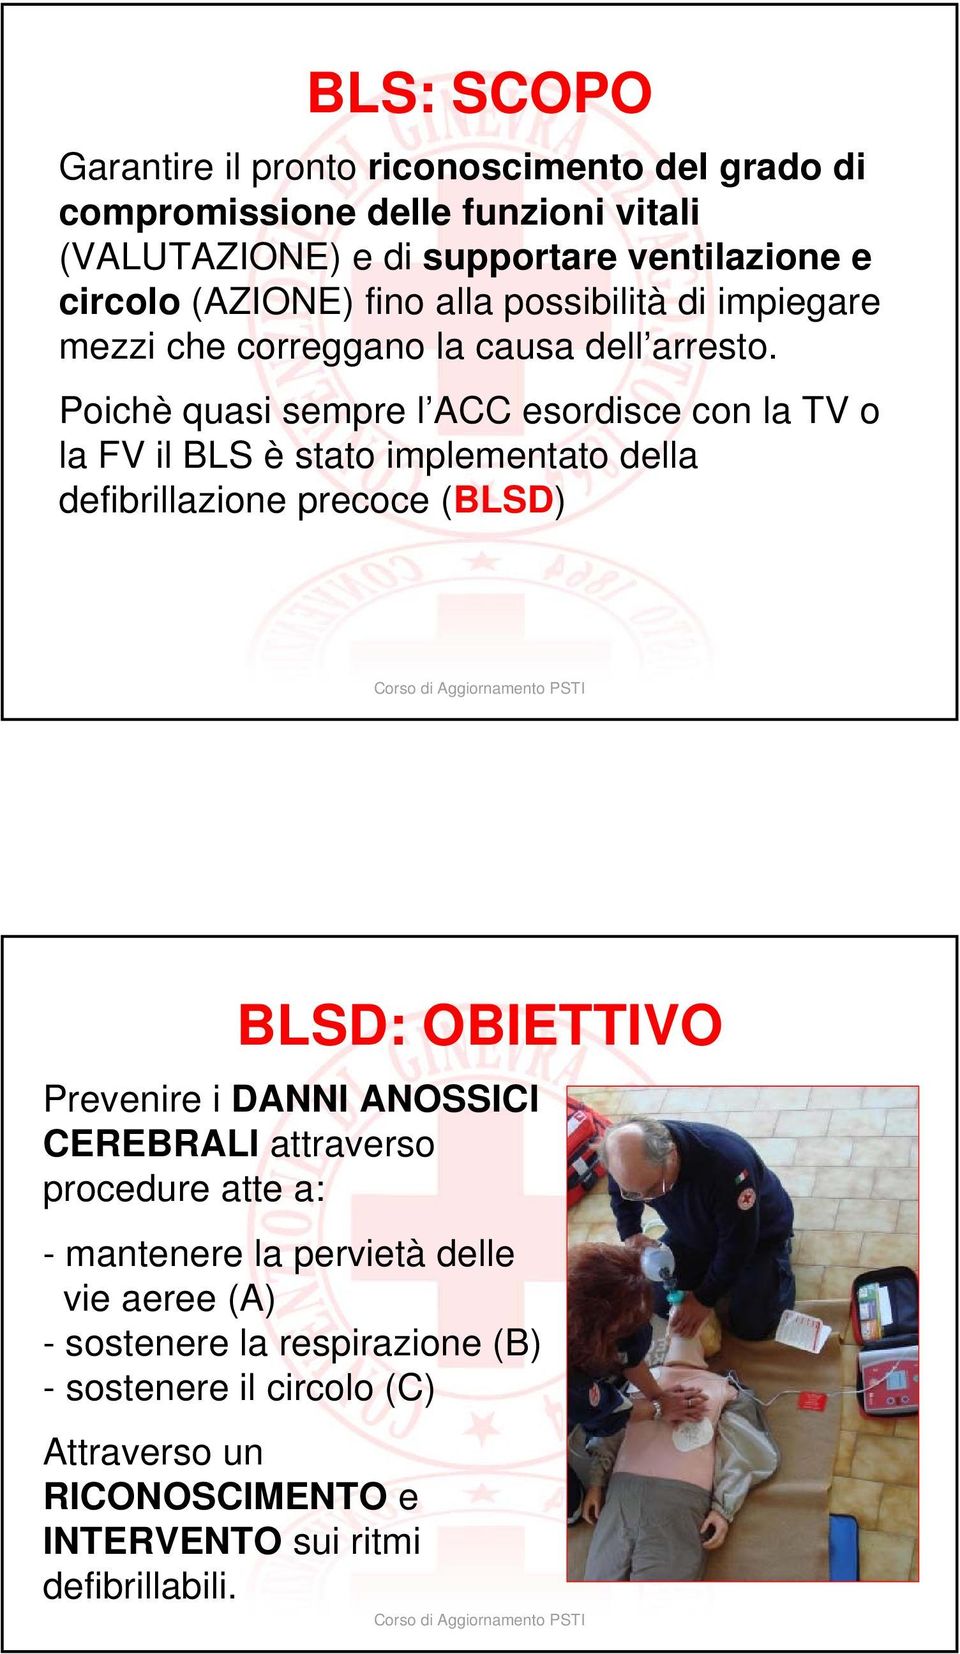 Poichè quasi sempre l ACC esordisce con la TV o la FV il BLS è stato implementato della defibrillazione precoce (BLSD) BLSD: OBIETTIVO Prevenire i